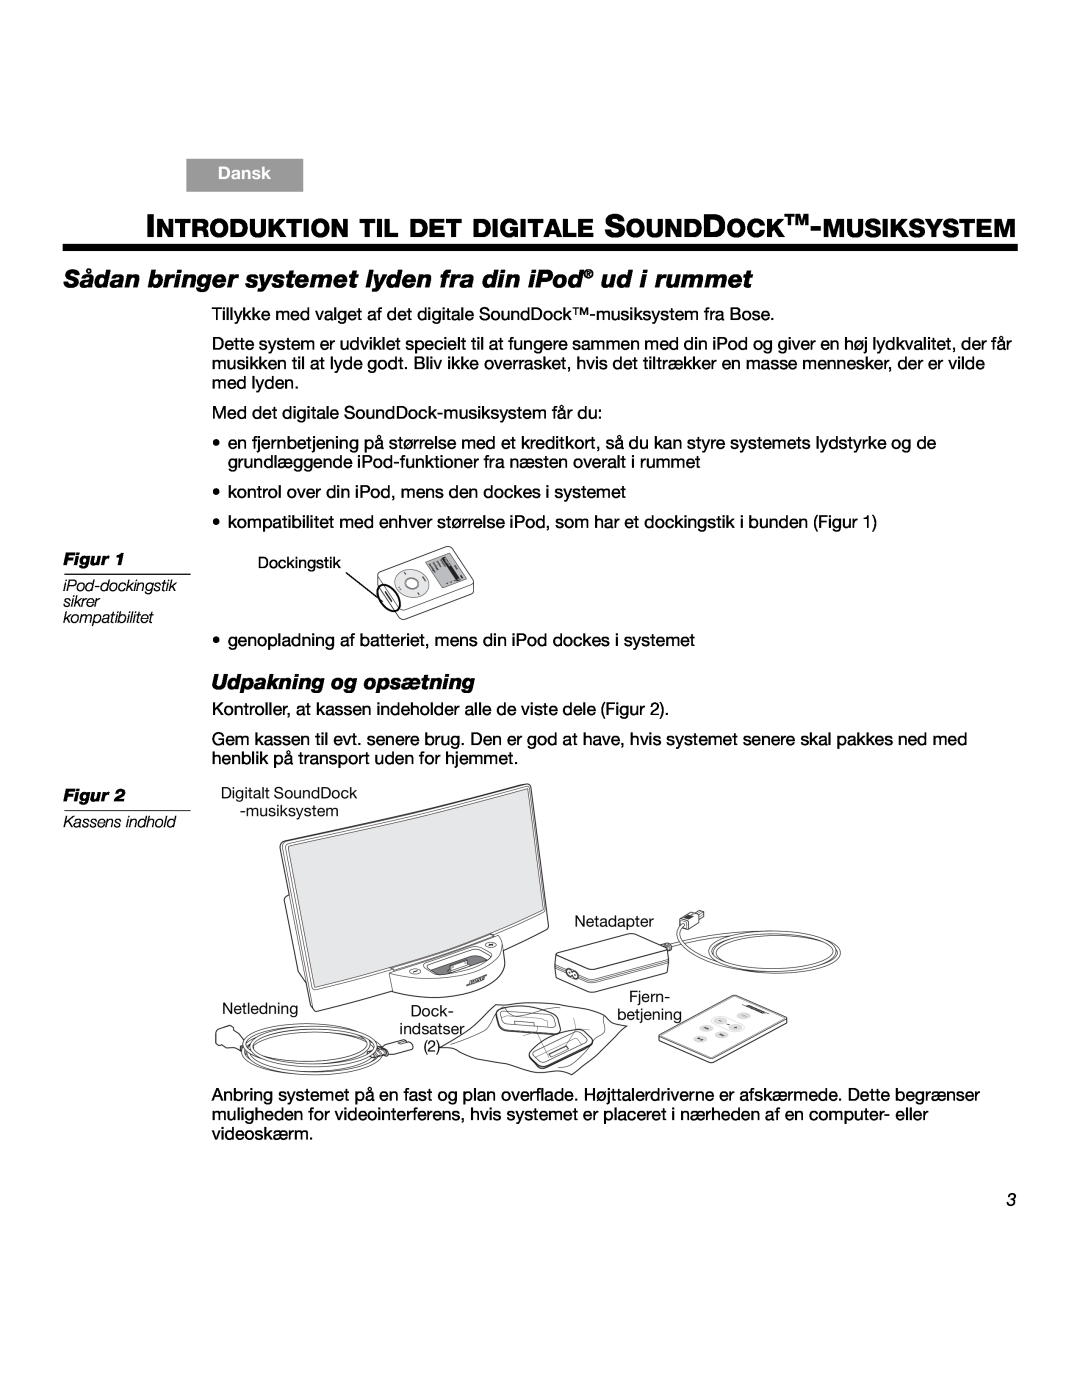 Bose SOUNDDOCKTM manual Udpakning og opsætning, Figur, Dansk 